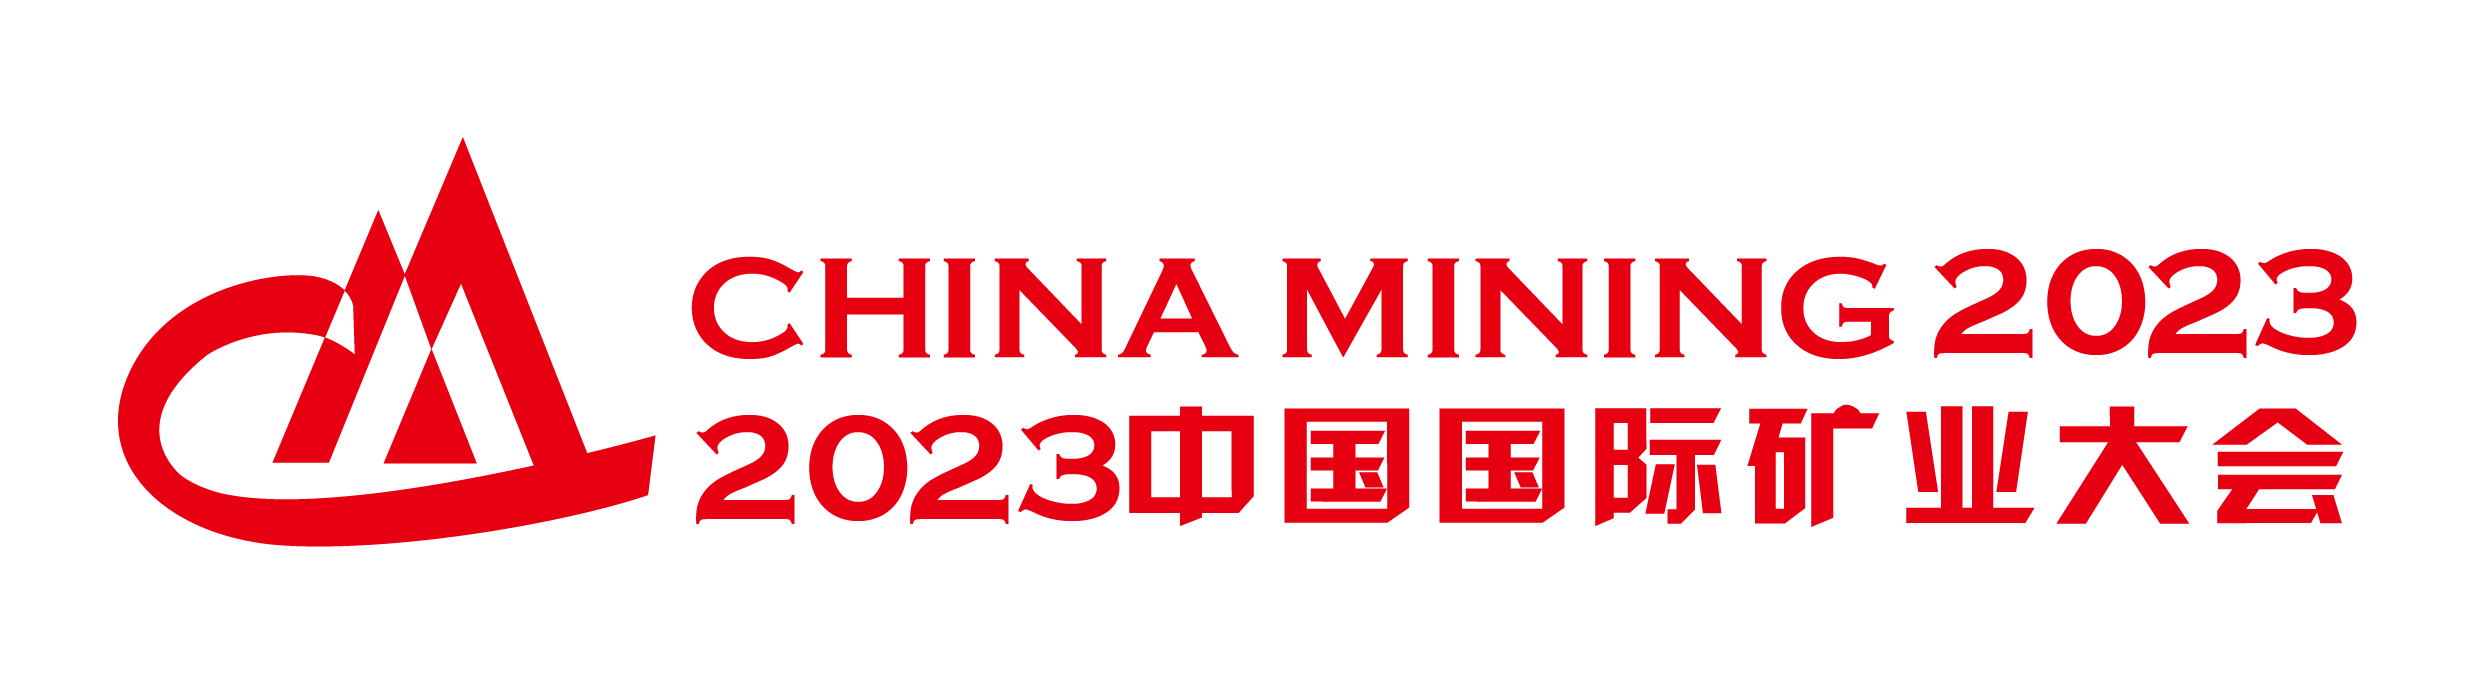 中国国际矿业大会 CHINA MINING